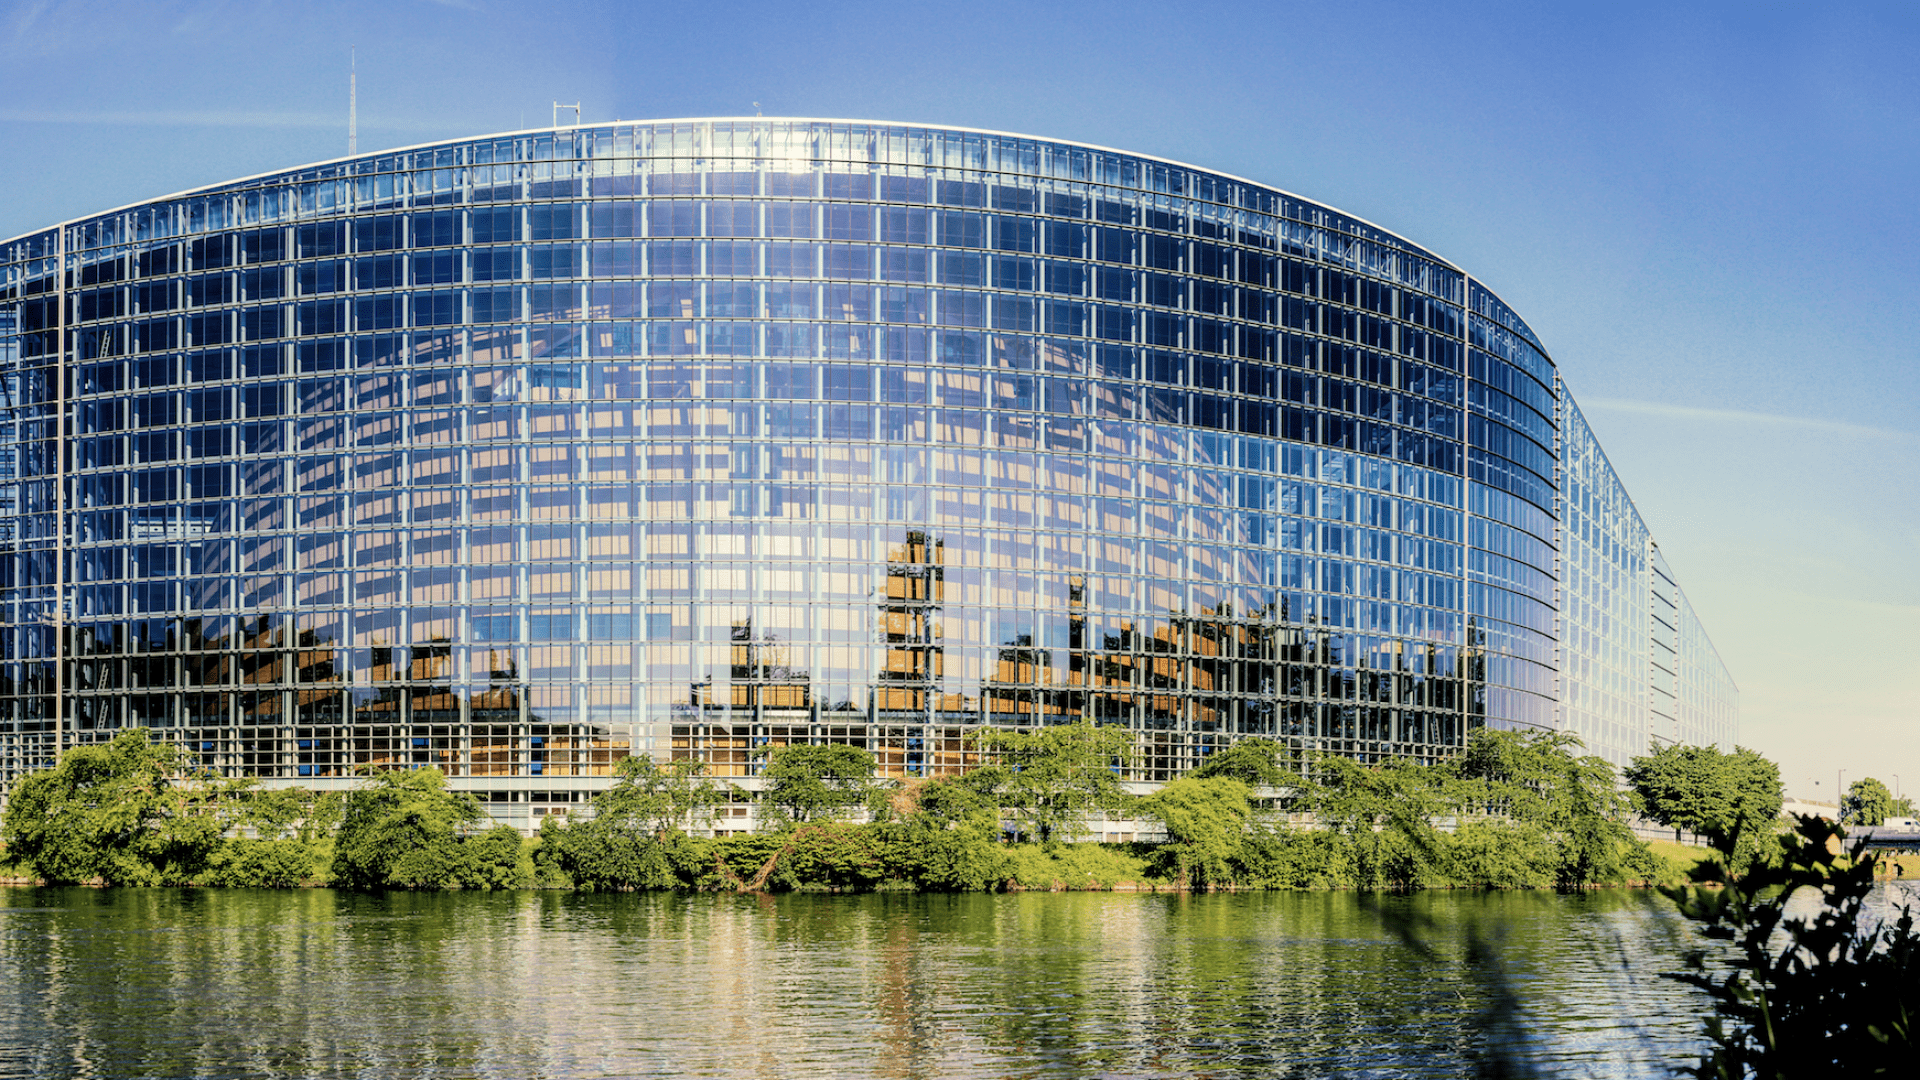 strasbourg parliament